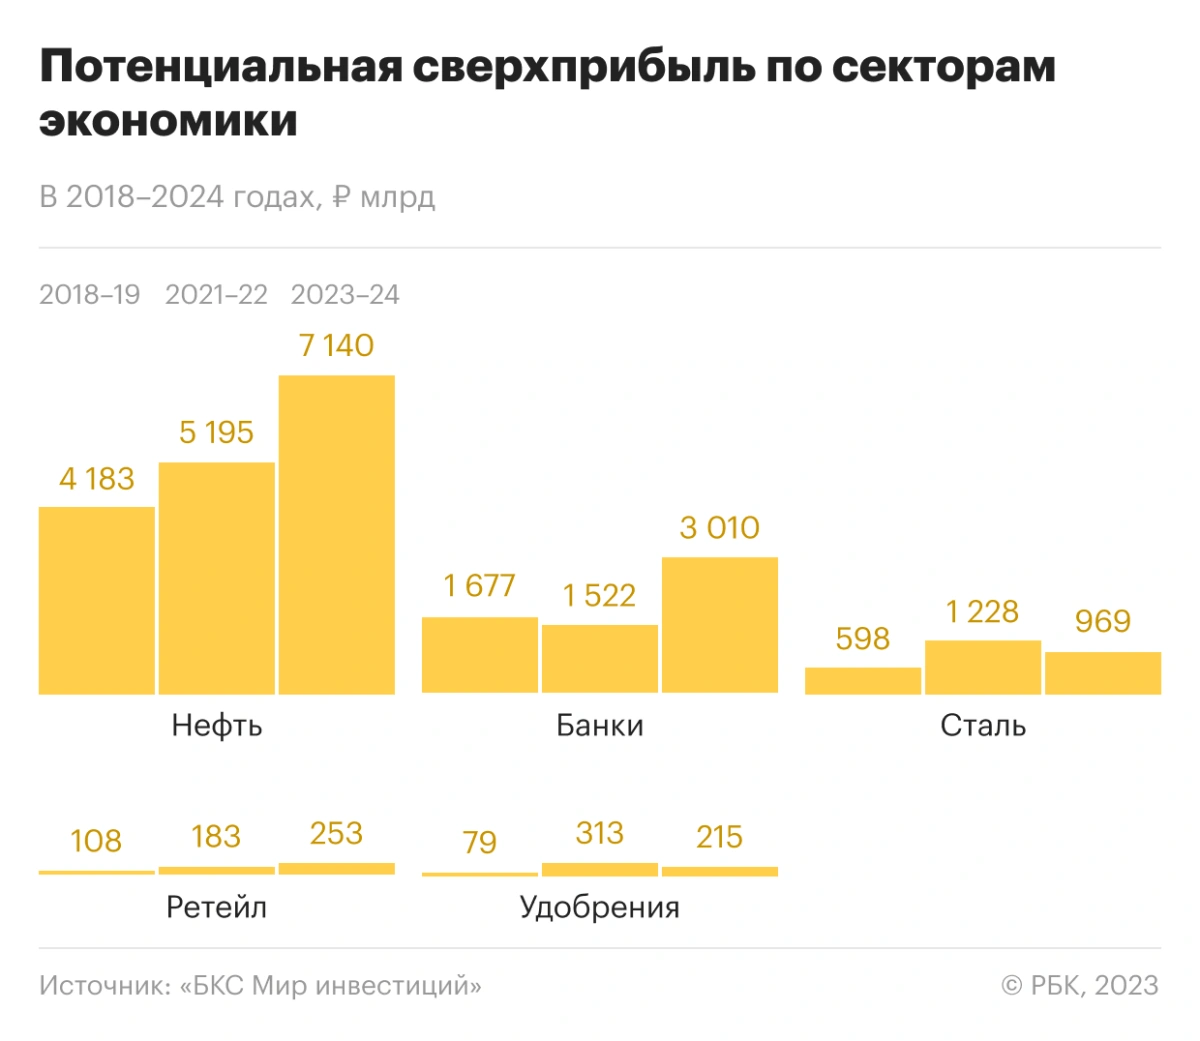 <p>Потенциальная сверхприбыль по секторам экономики в 2018-2024 годах, млрд руб.</p>